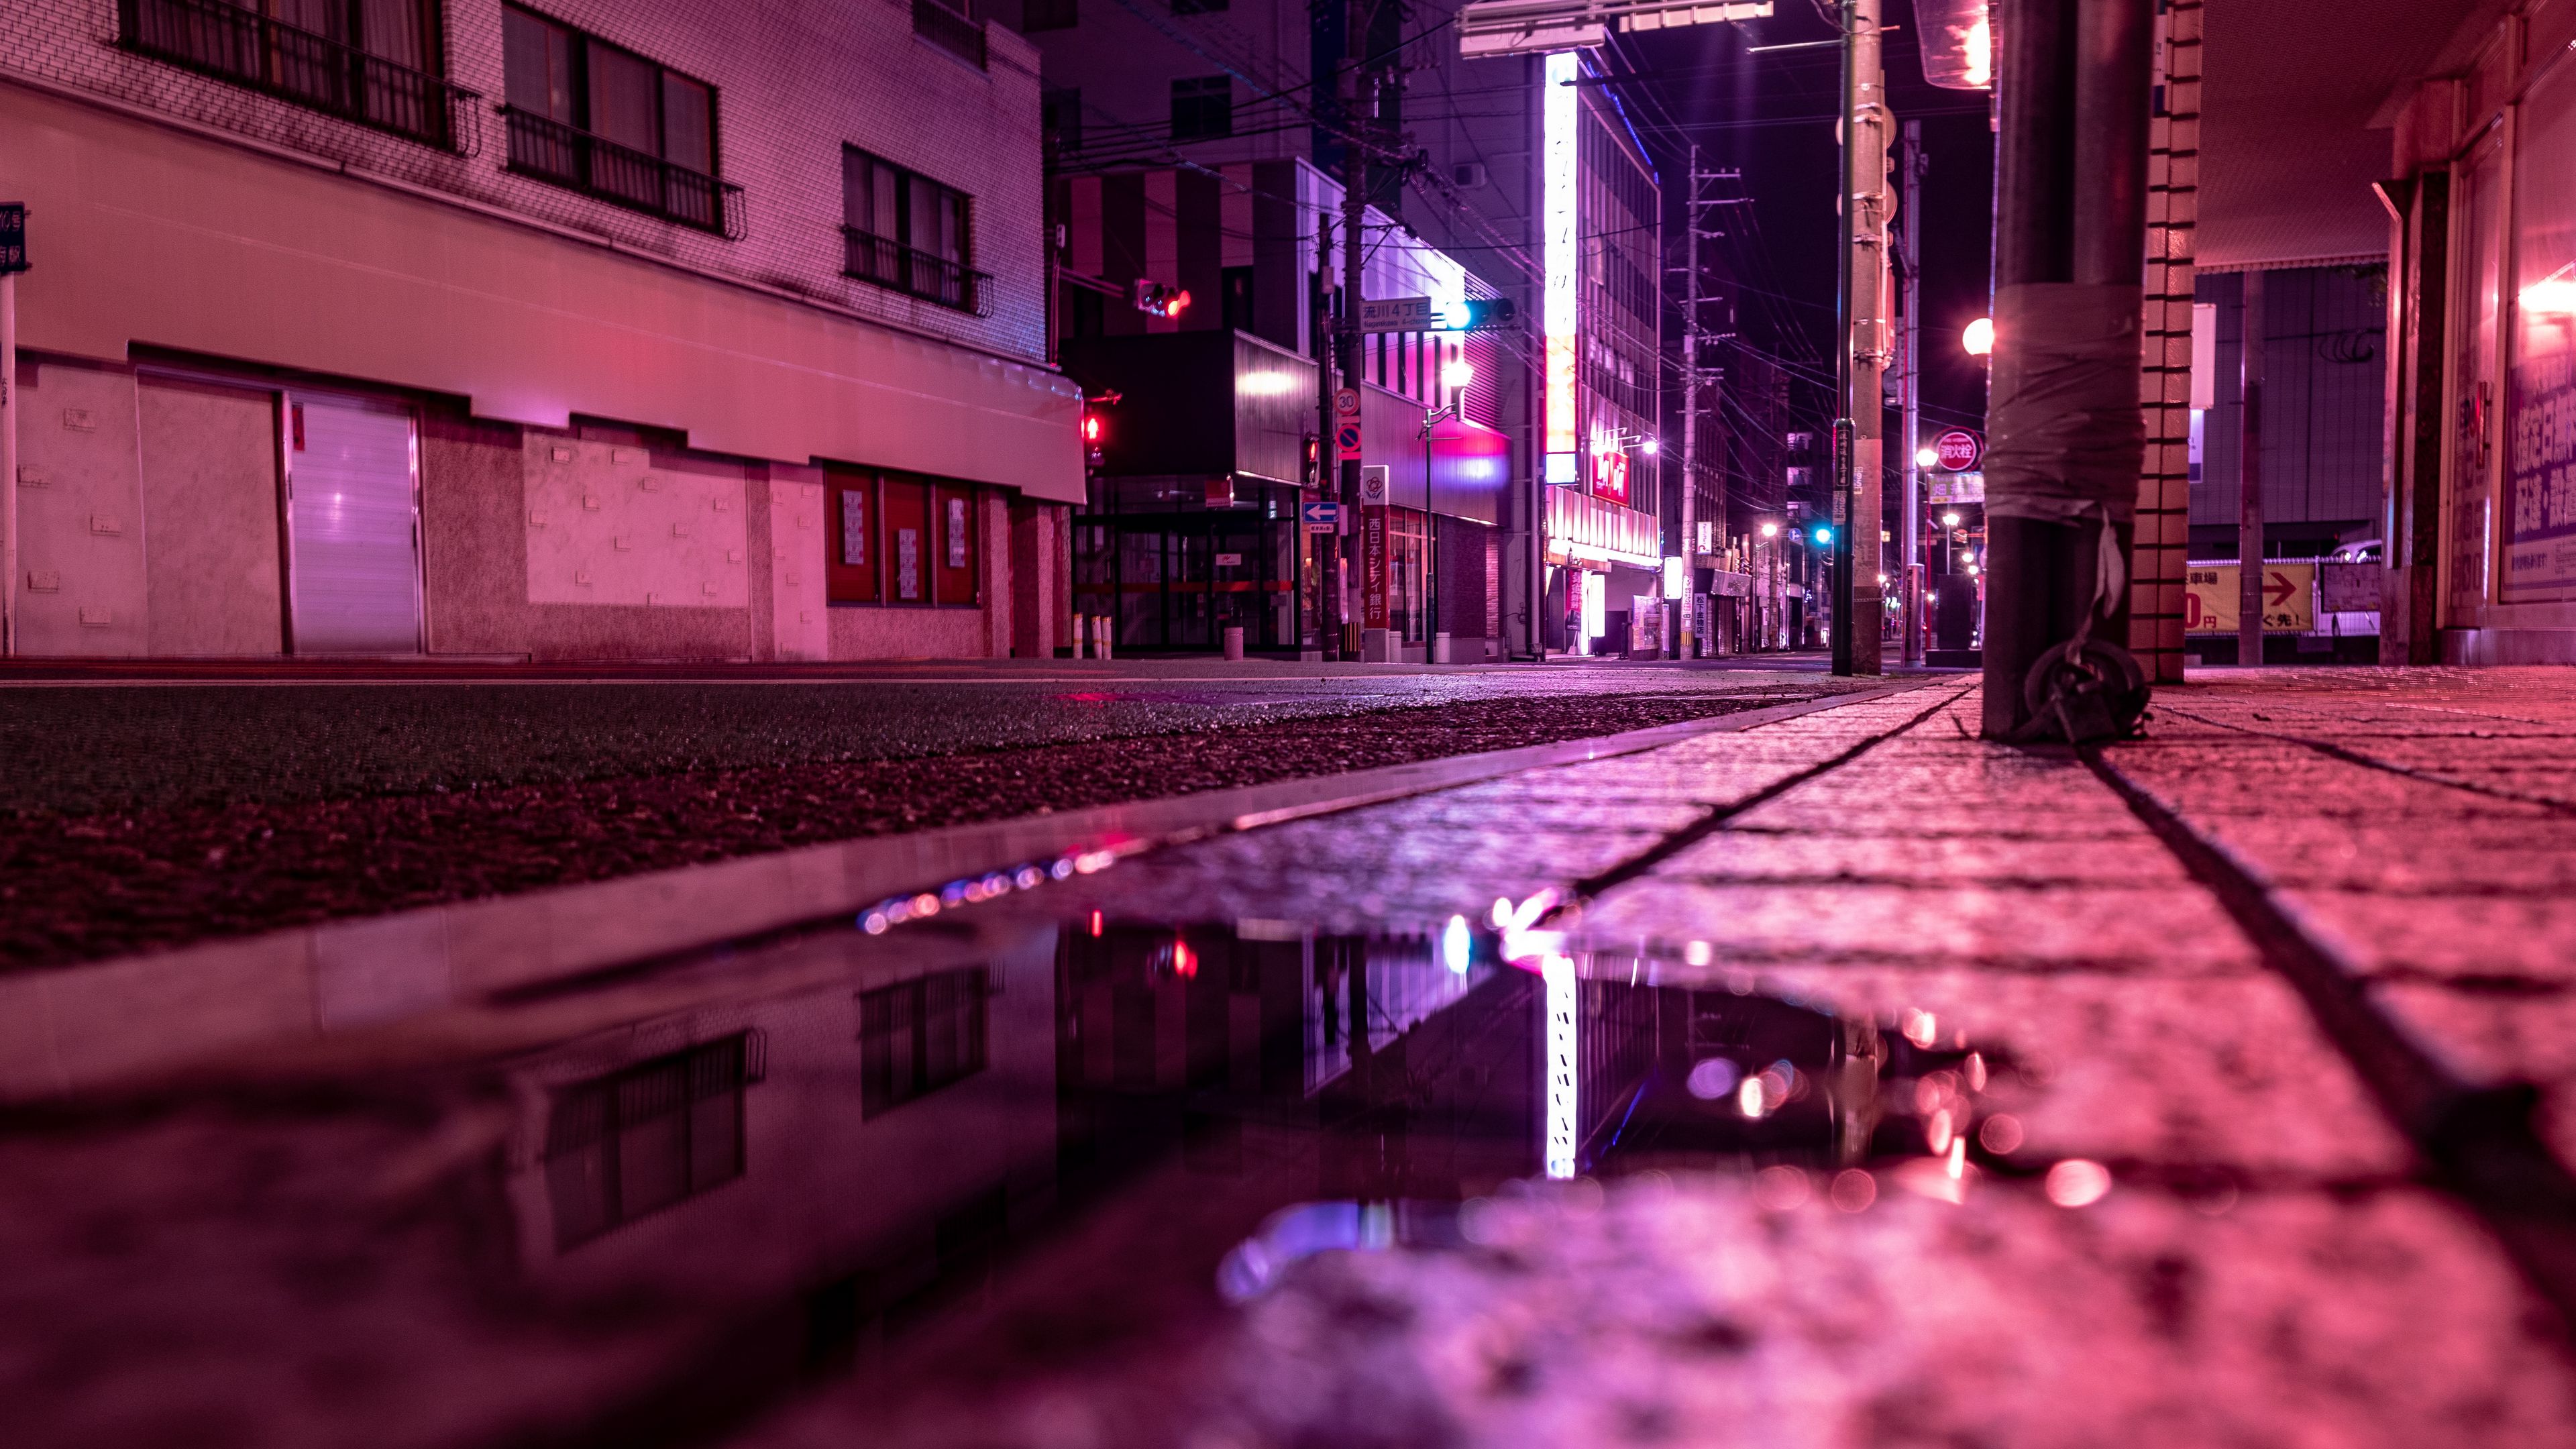 Bạn sẽ không bao giờ quên cảnh đường phố rực rỡ với các đèn màu hồng neon tuyệt đẹp. Hãy tận hưởng không khí lung linh và khám phá thế giới đầy màu sắc với những đường neon màu hồng huyền ảo này.